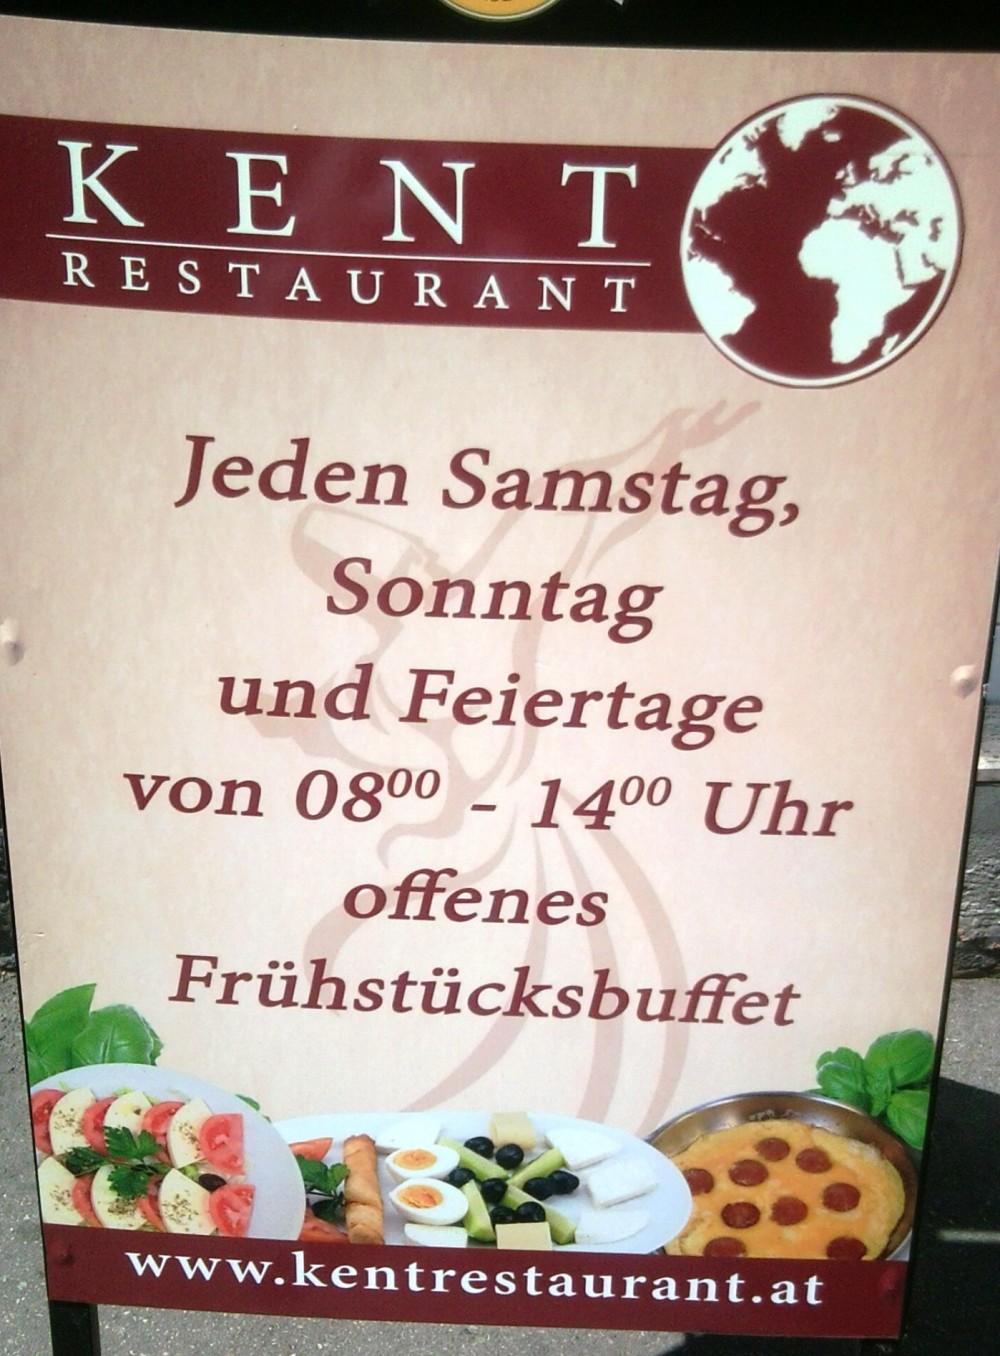 Kent Werbetafel Frühstücksbuffet - Restaurant Kent - Wien